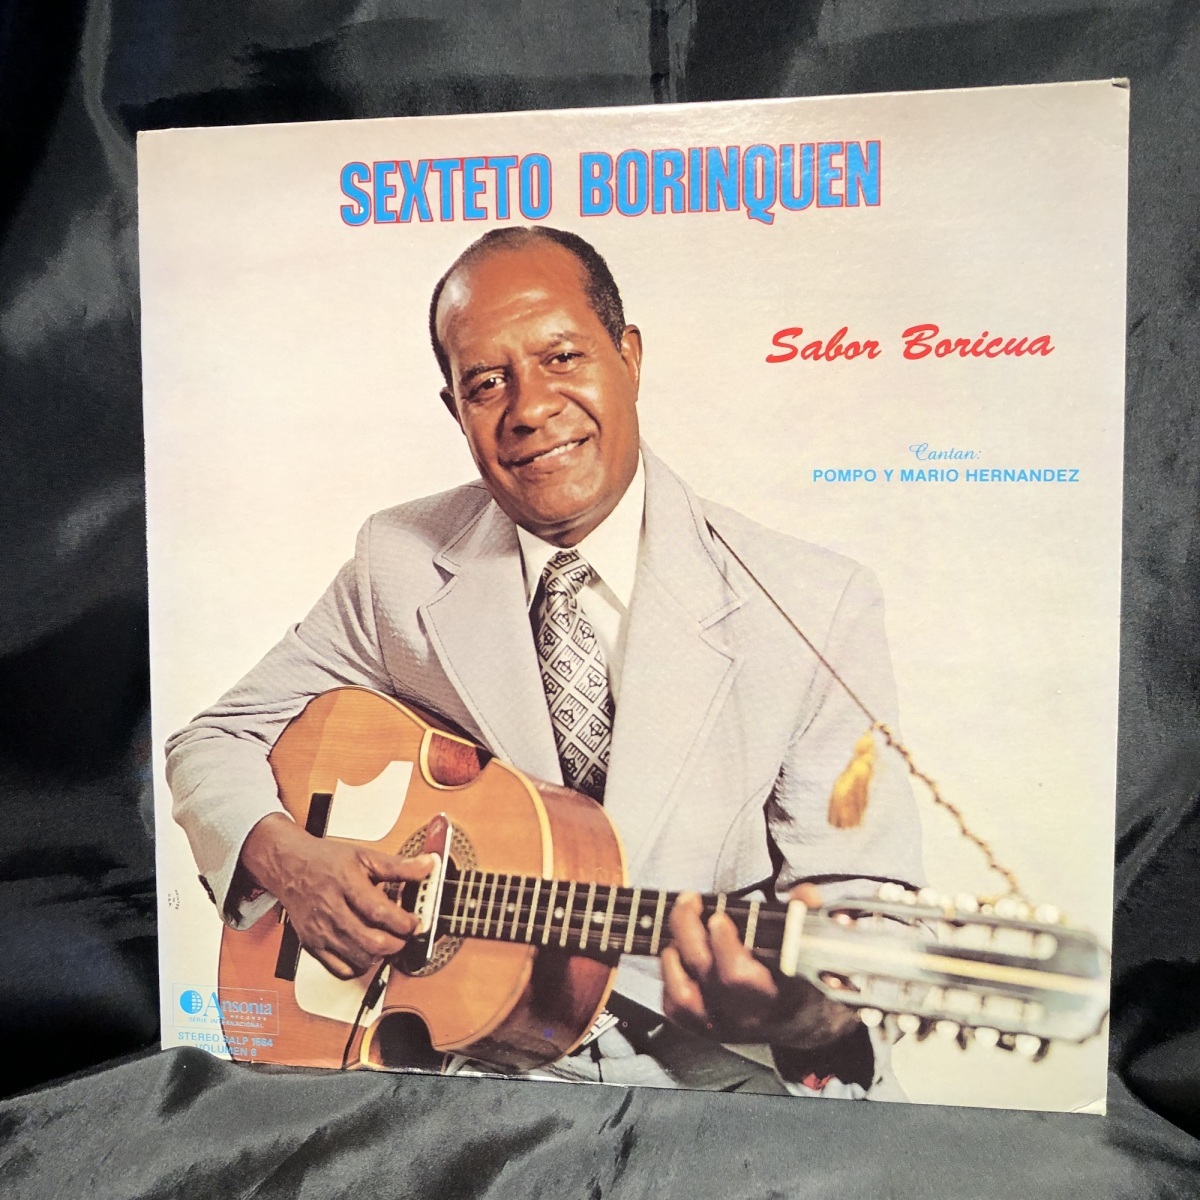 Sabor boricua by Sexteto Borinquen Vol. 6 LP ANSONIA RECORDS_画像1